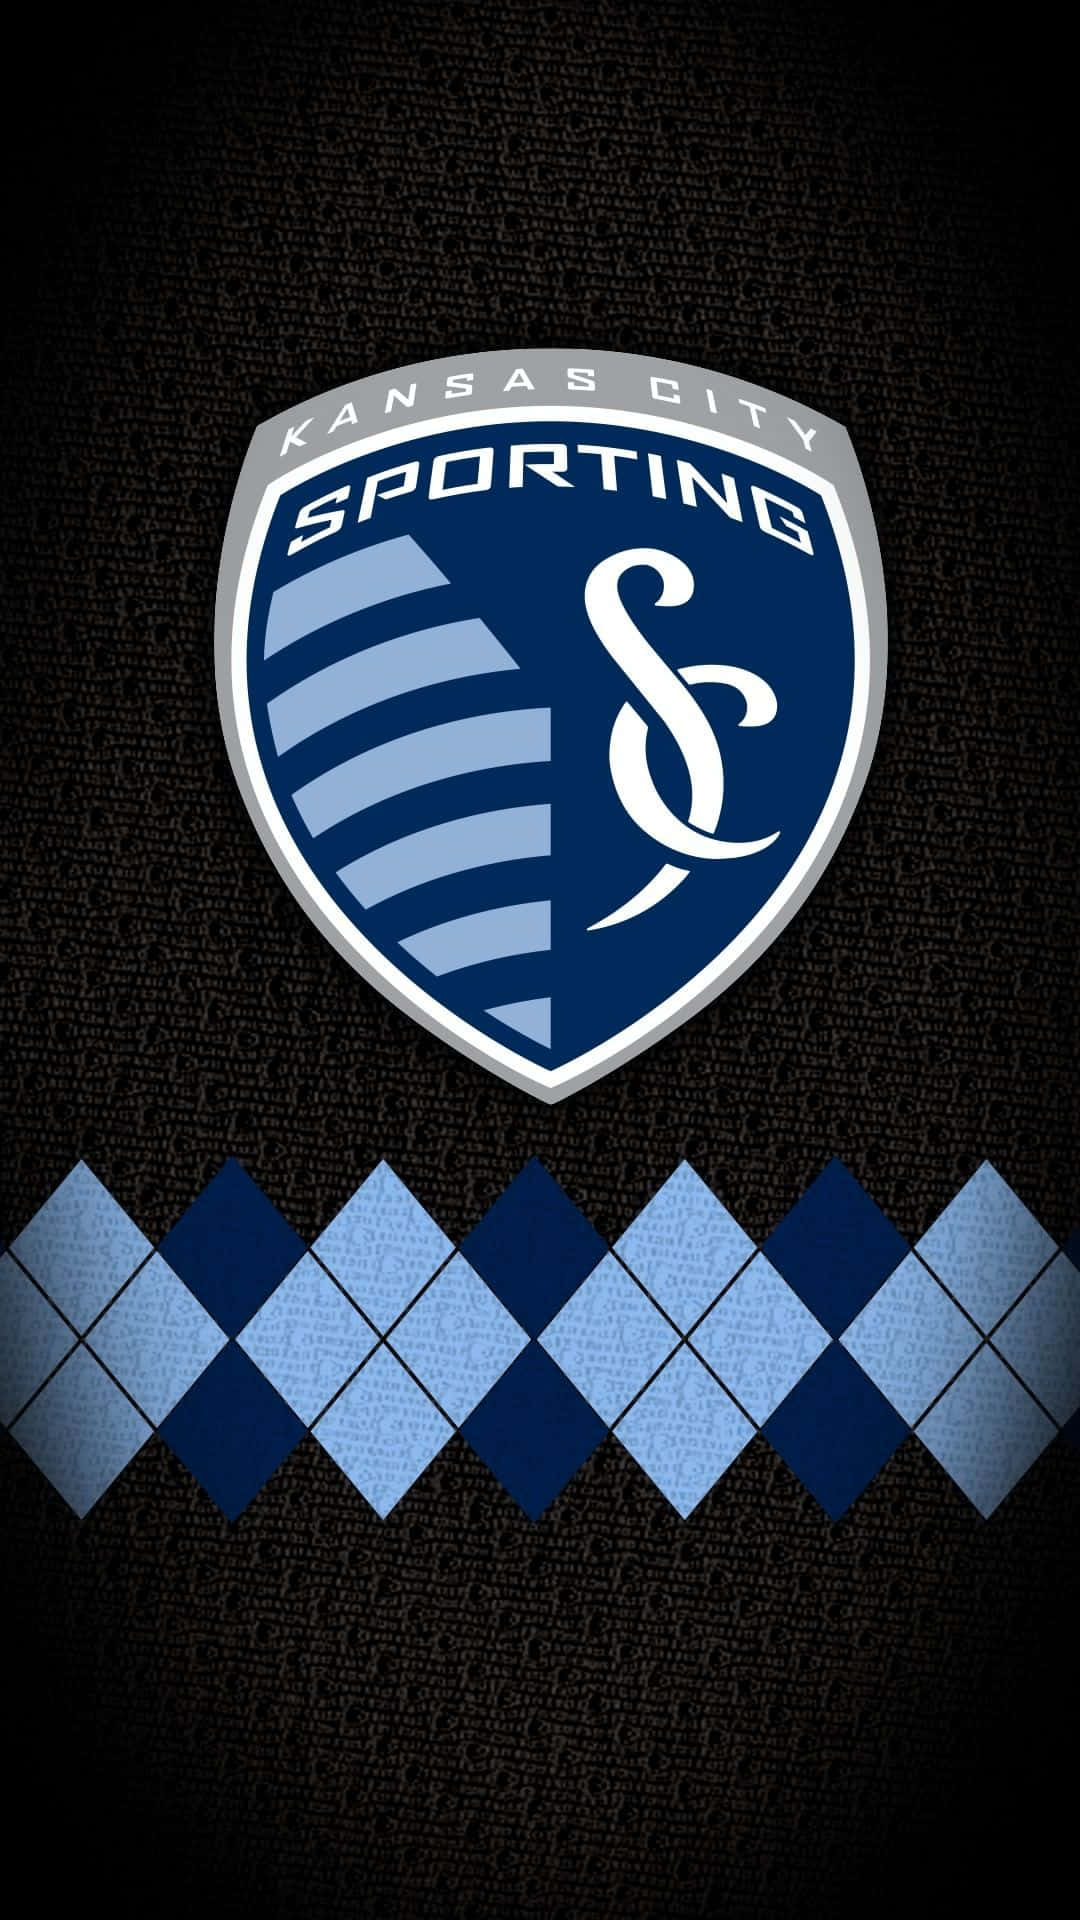 Logodo Sporting Kansas City Com Padrão Argyle. Papel de Parede